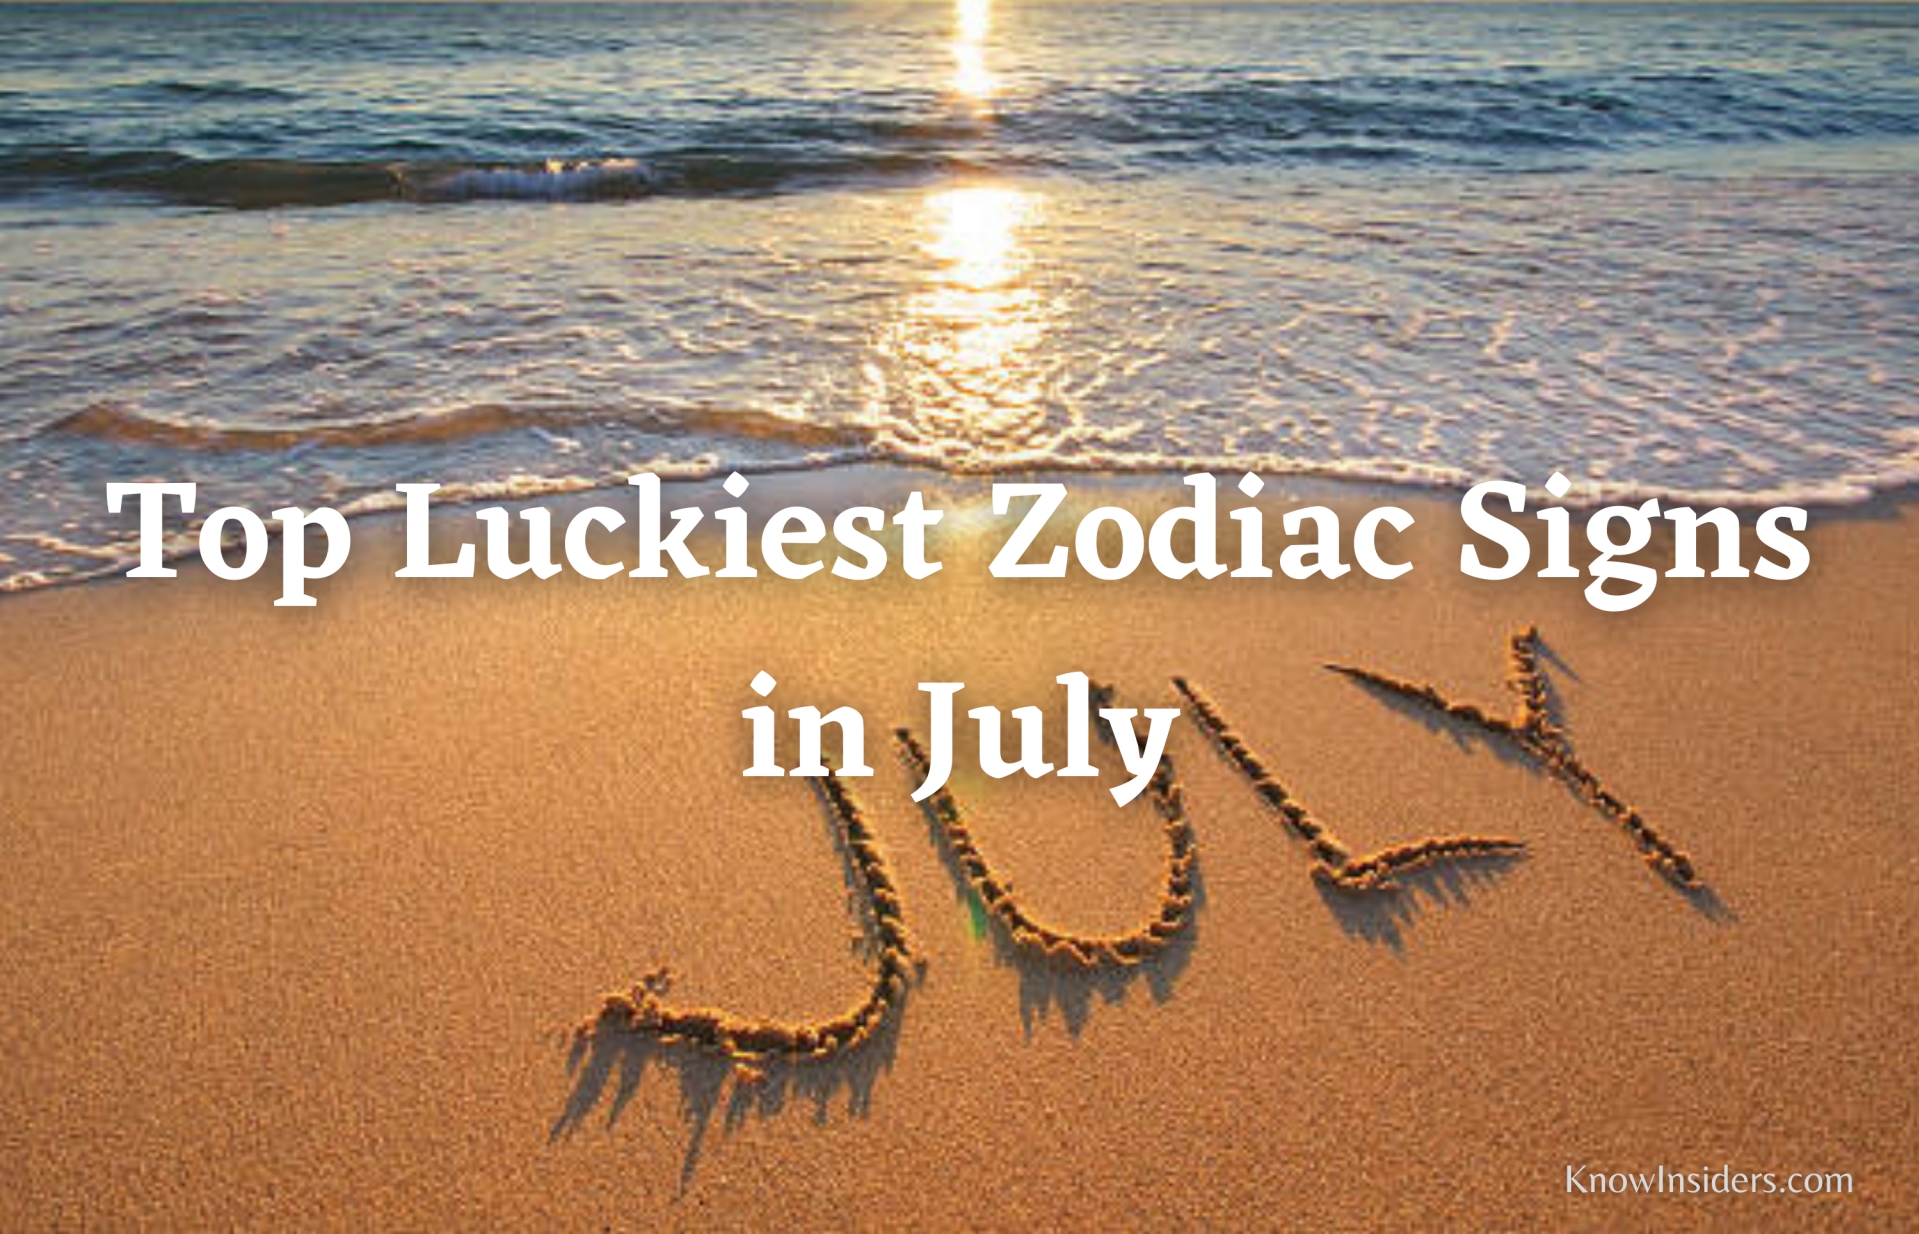 Top Luckiest Zodiac Signs in July